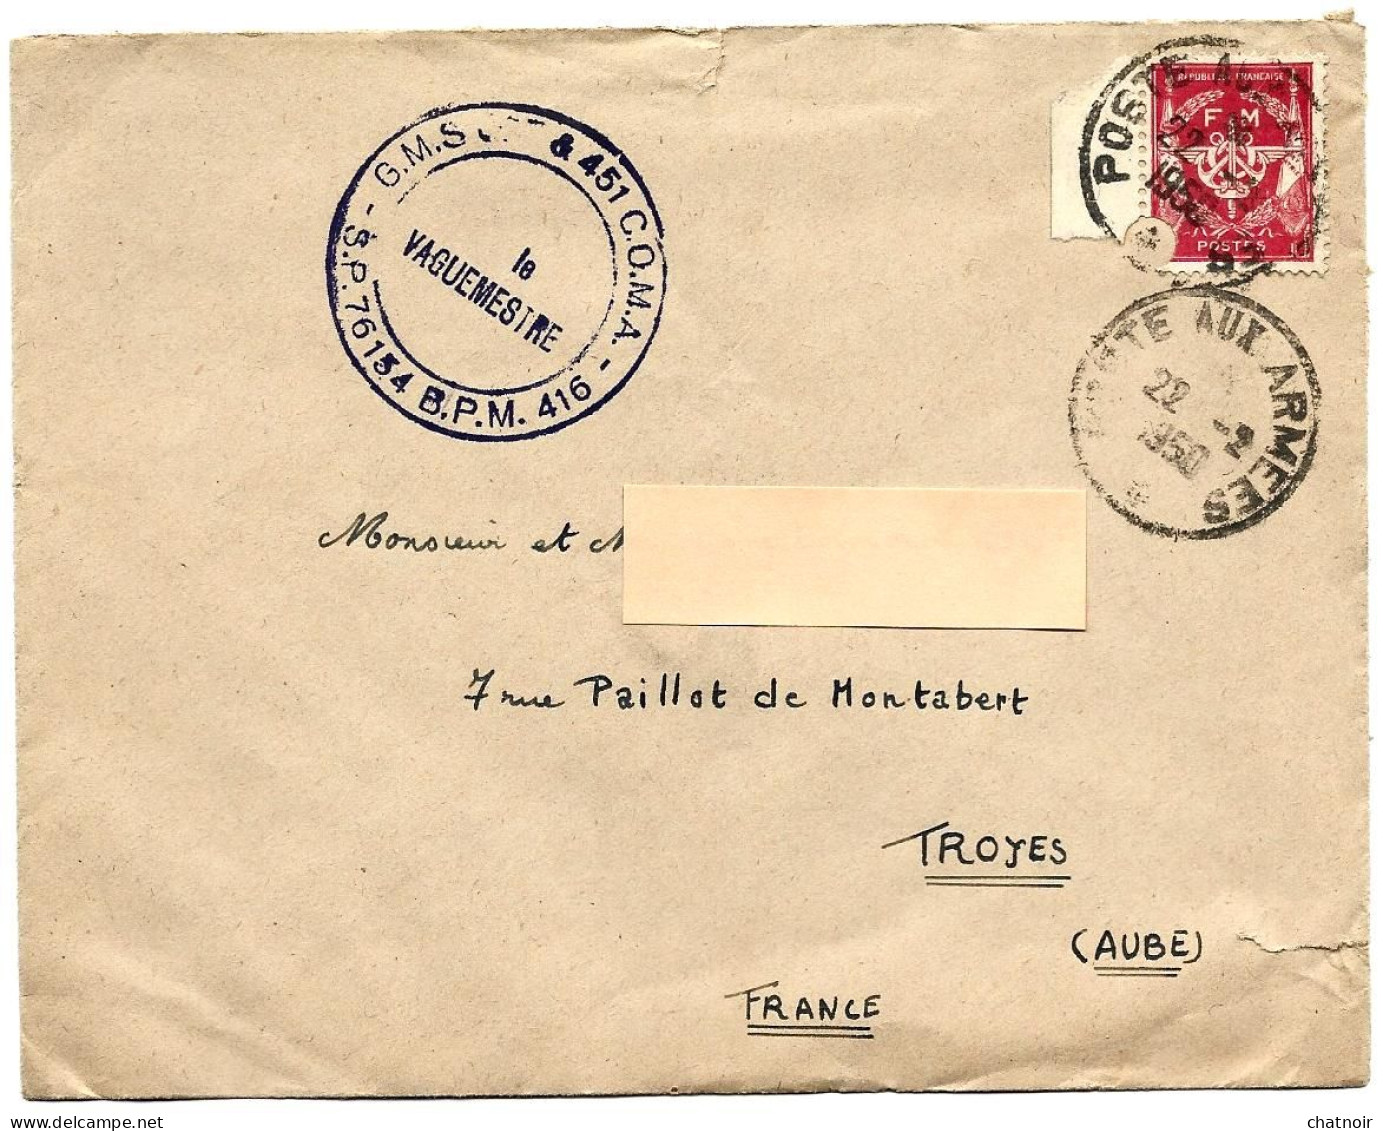 Envel  FM  Oblit  Poste Aux Armees  1950  Cachet " Le Vaguemestre ...SP 76154  BPM 416 " - Militaire Zegels